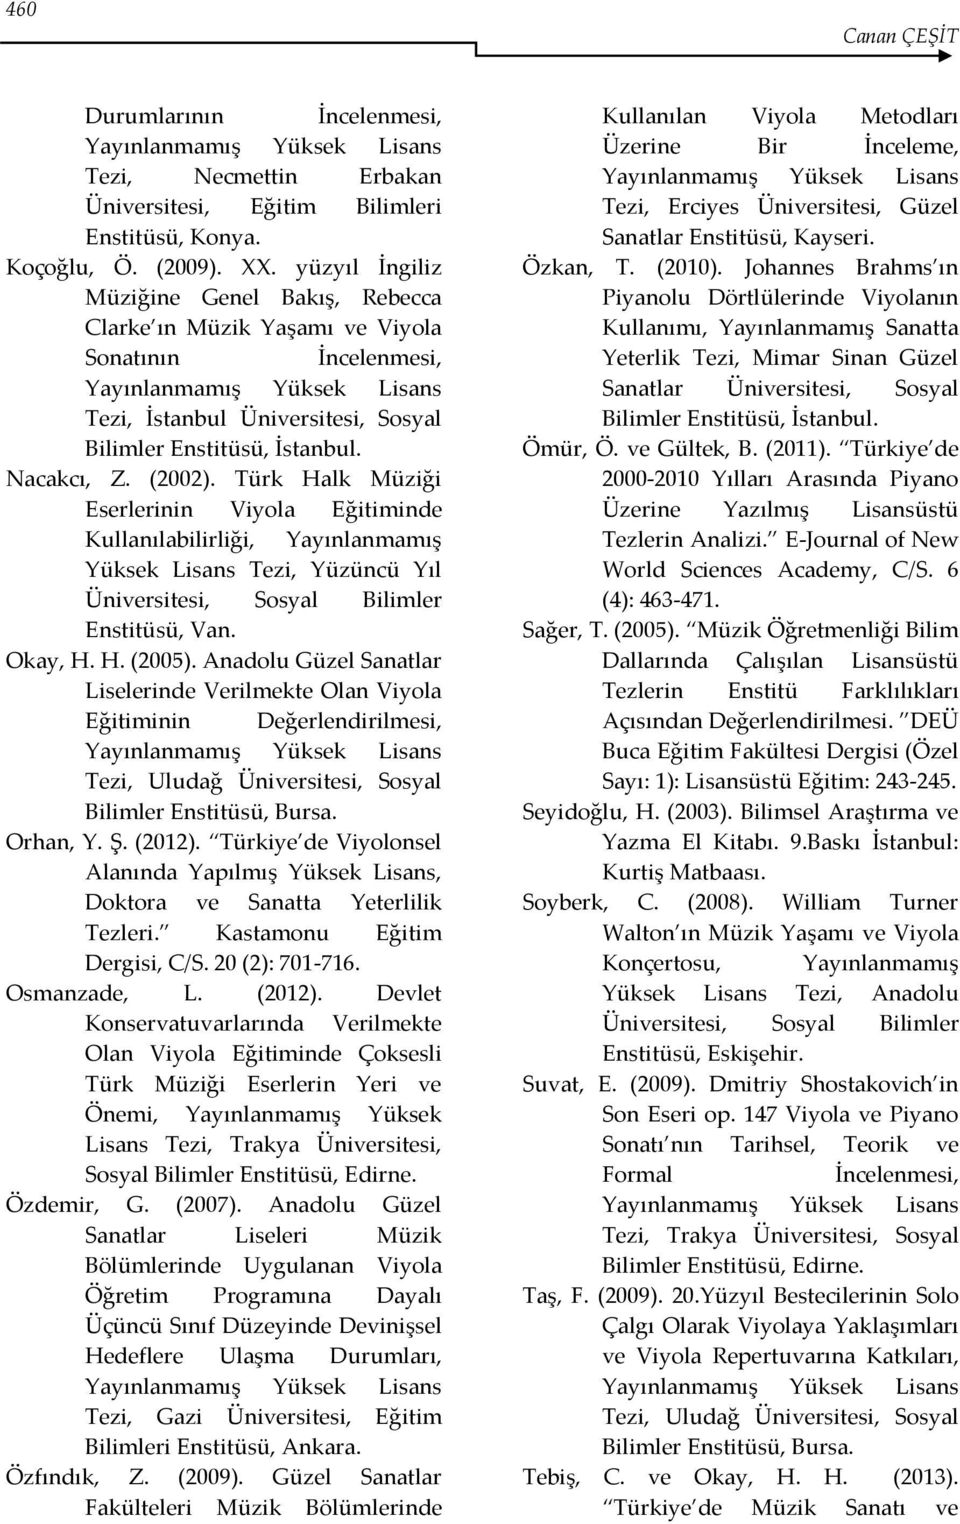 Türk Halk Müziği Eserlerinin Viyola Eğitiminde Kullanılabilirliği, Yayınlanmamış Yüksek Lisans Tezi, Yüzüncü Yıl Enstitüsü, Van. Okay, H. H. (2005).